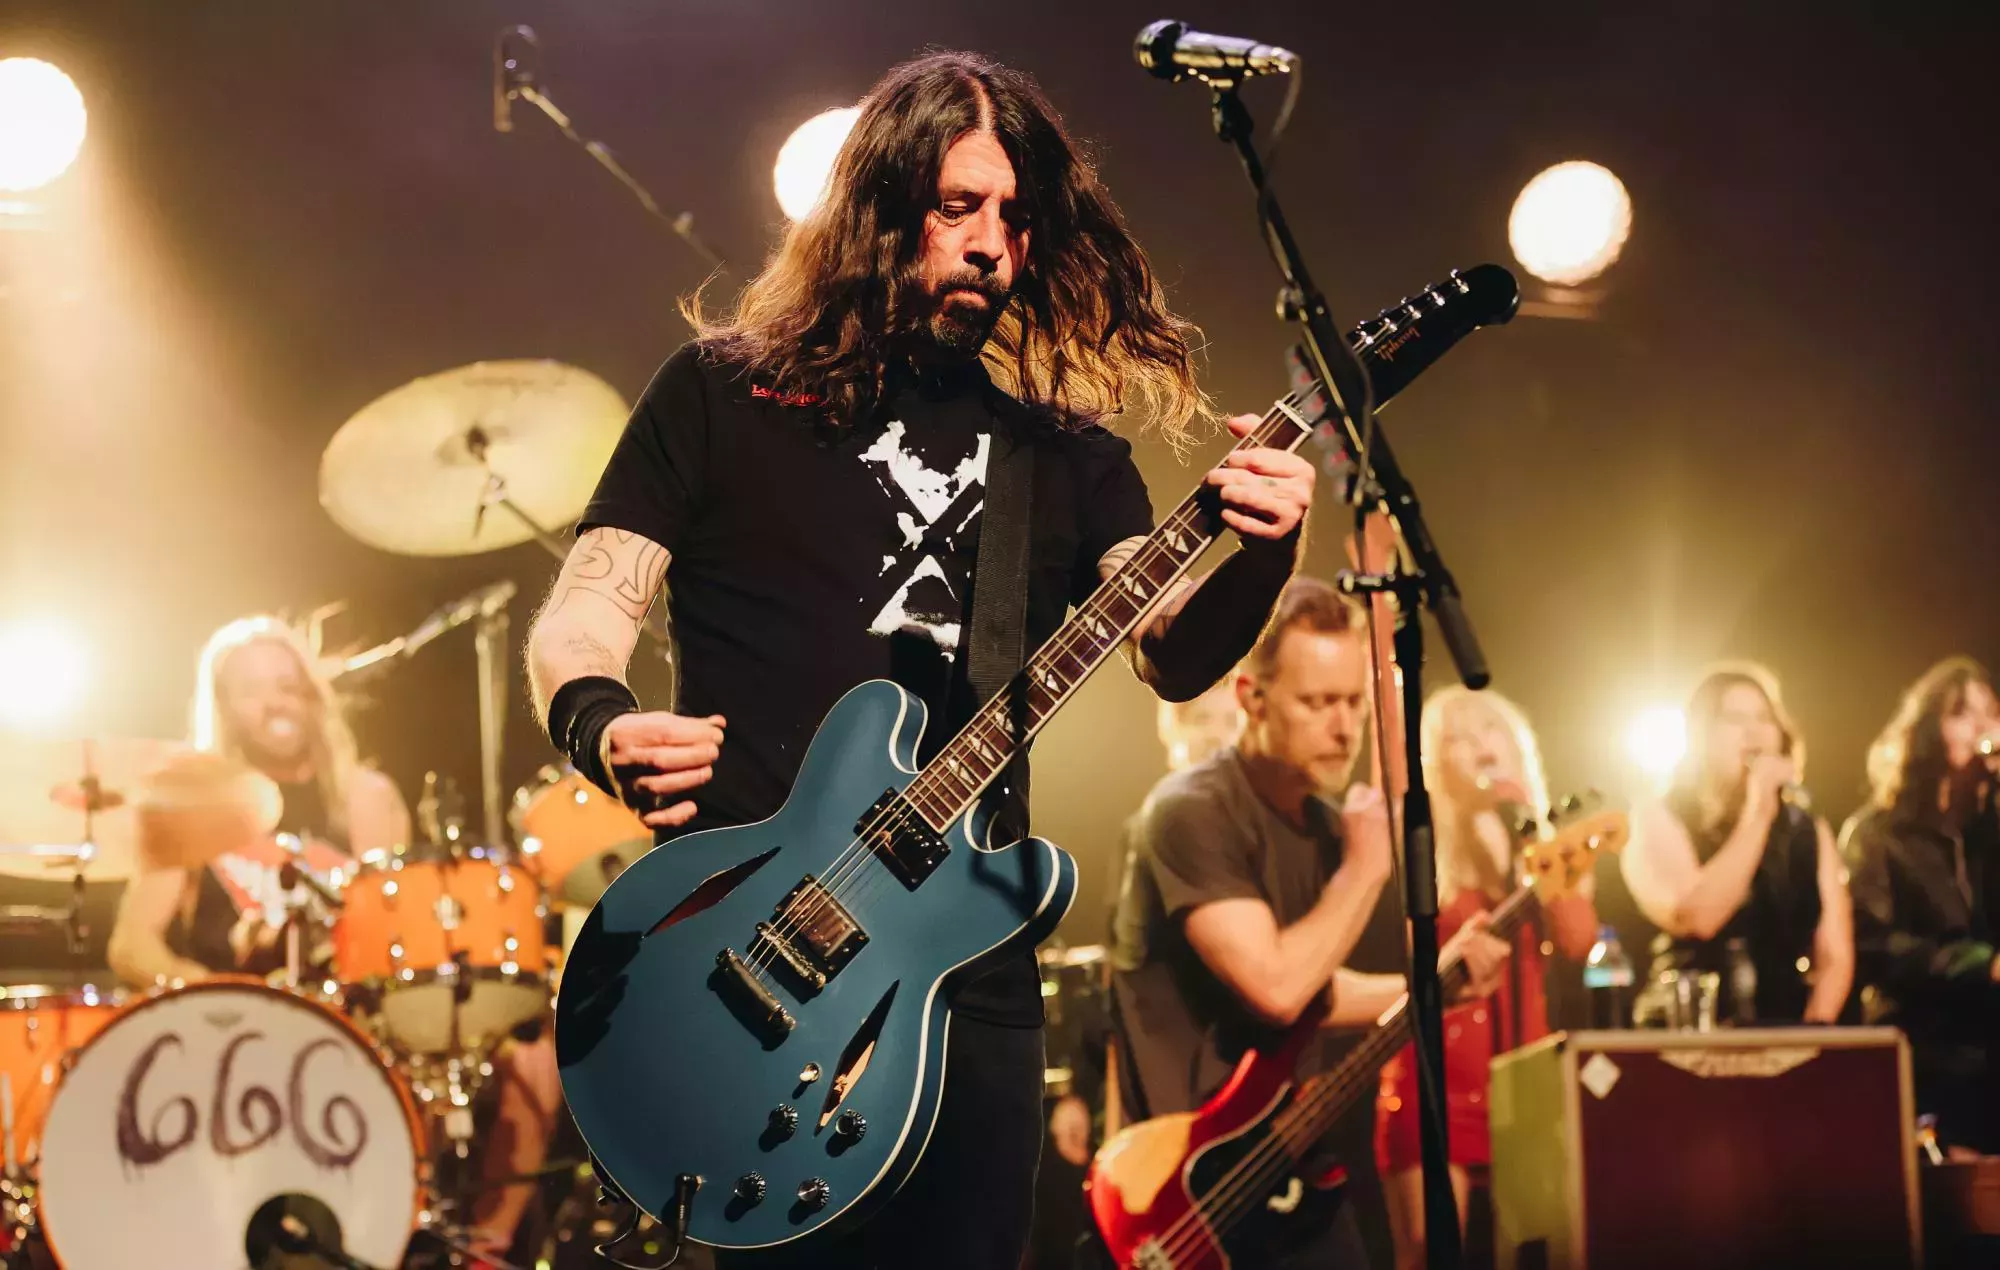 Mira cómo Dave Grohl fracasa al nombrar las canciones de Foo Fighters en 'The Late Late Show With James Corden'